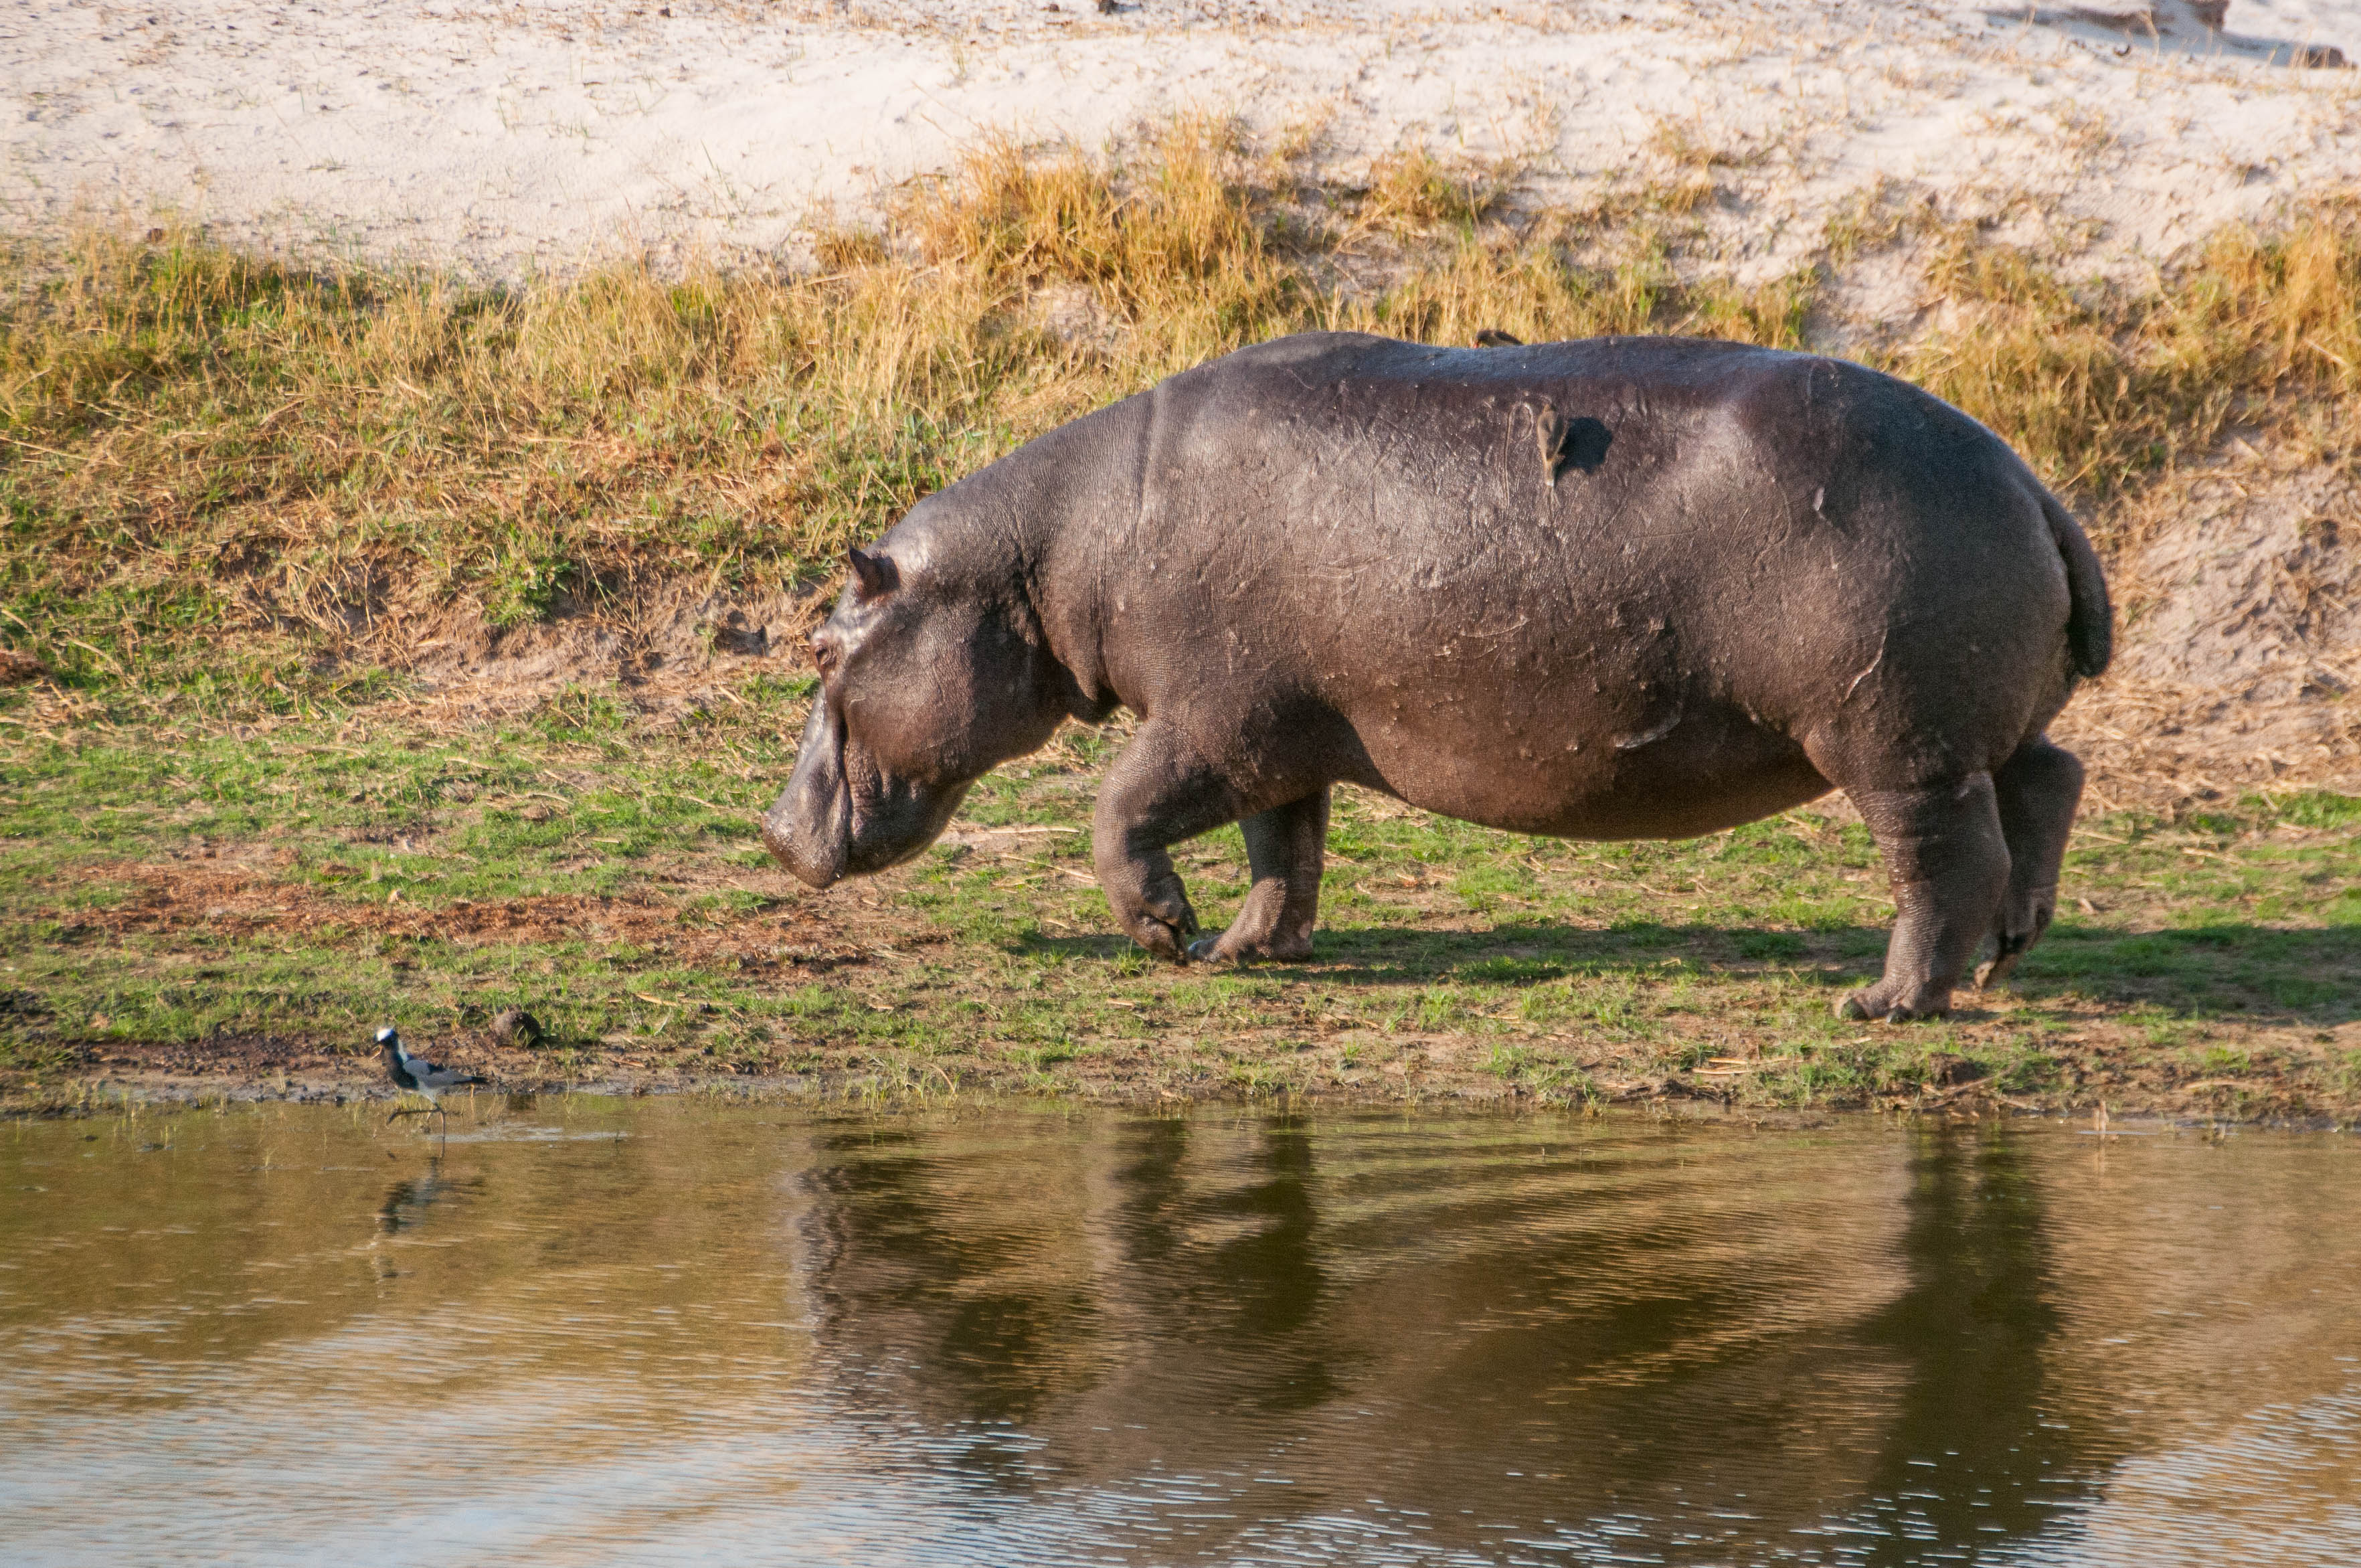 Hippopotame amphibien ou commun (Hippopotamus, Hippopotamus amphibius), adulte déambulant sur la berge de la rivière Chobe, Chobe National Park, Botswana.